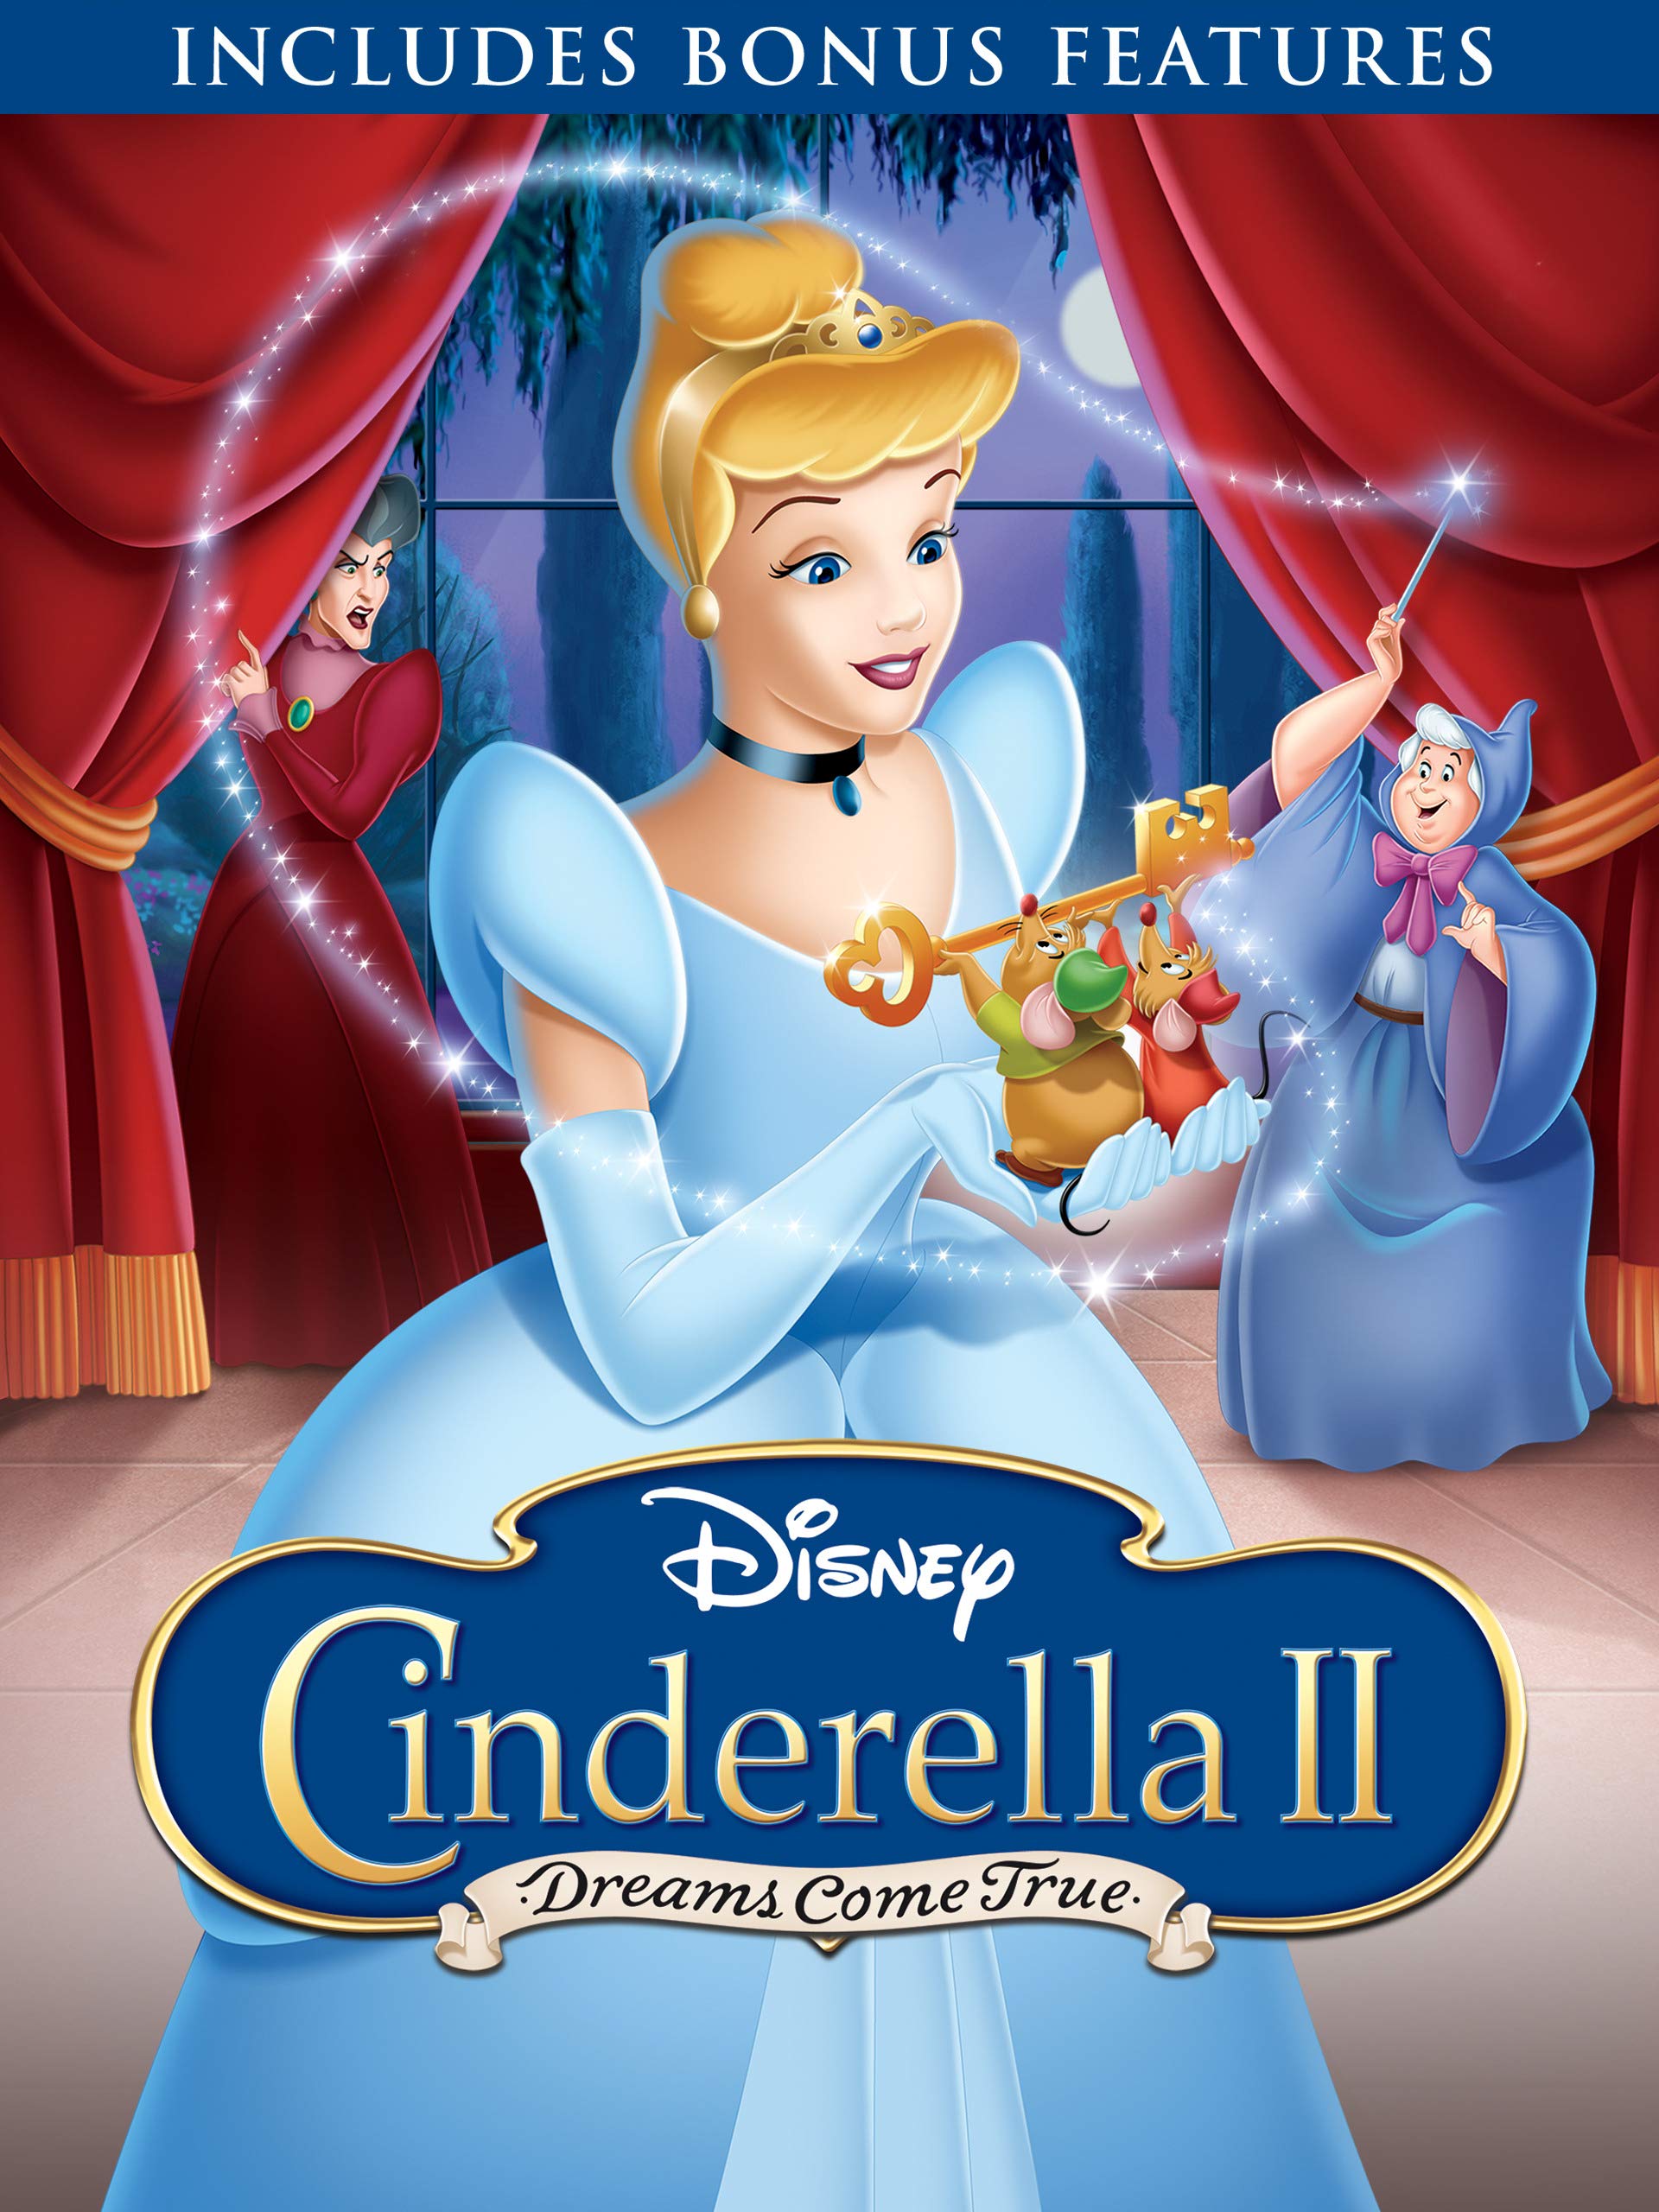 Disney Princess Enchanted Tales. Золушка 2: мечты сбываются. Cinderella 2 Dreams come true 2002 10 English Cover. Cinderella II: Dreams come true credits.